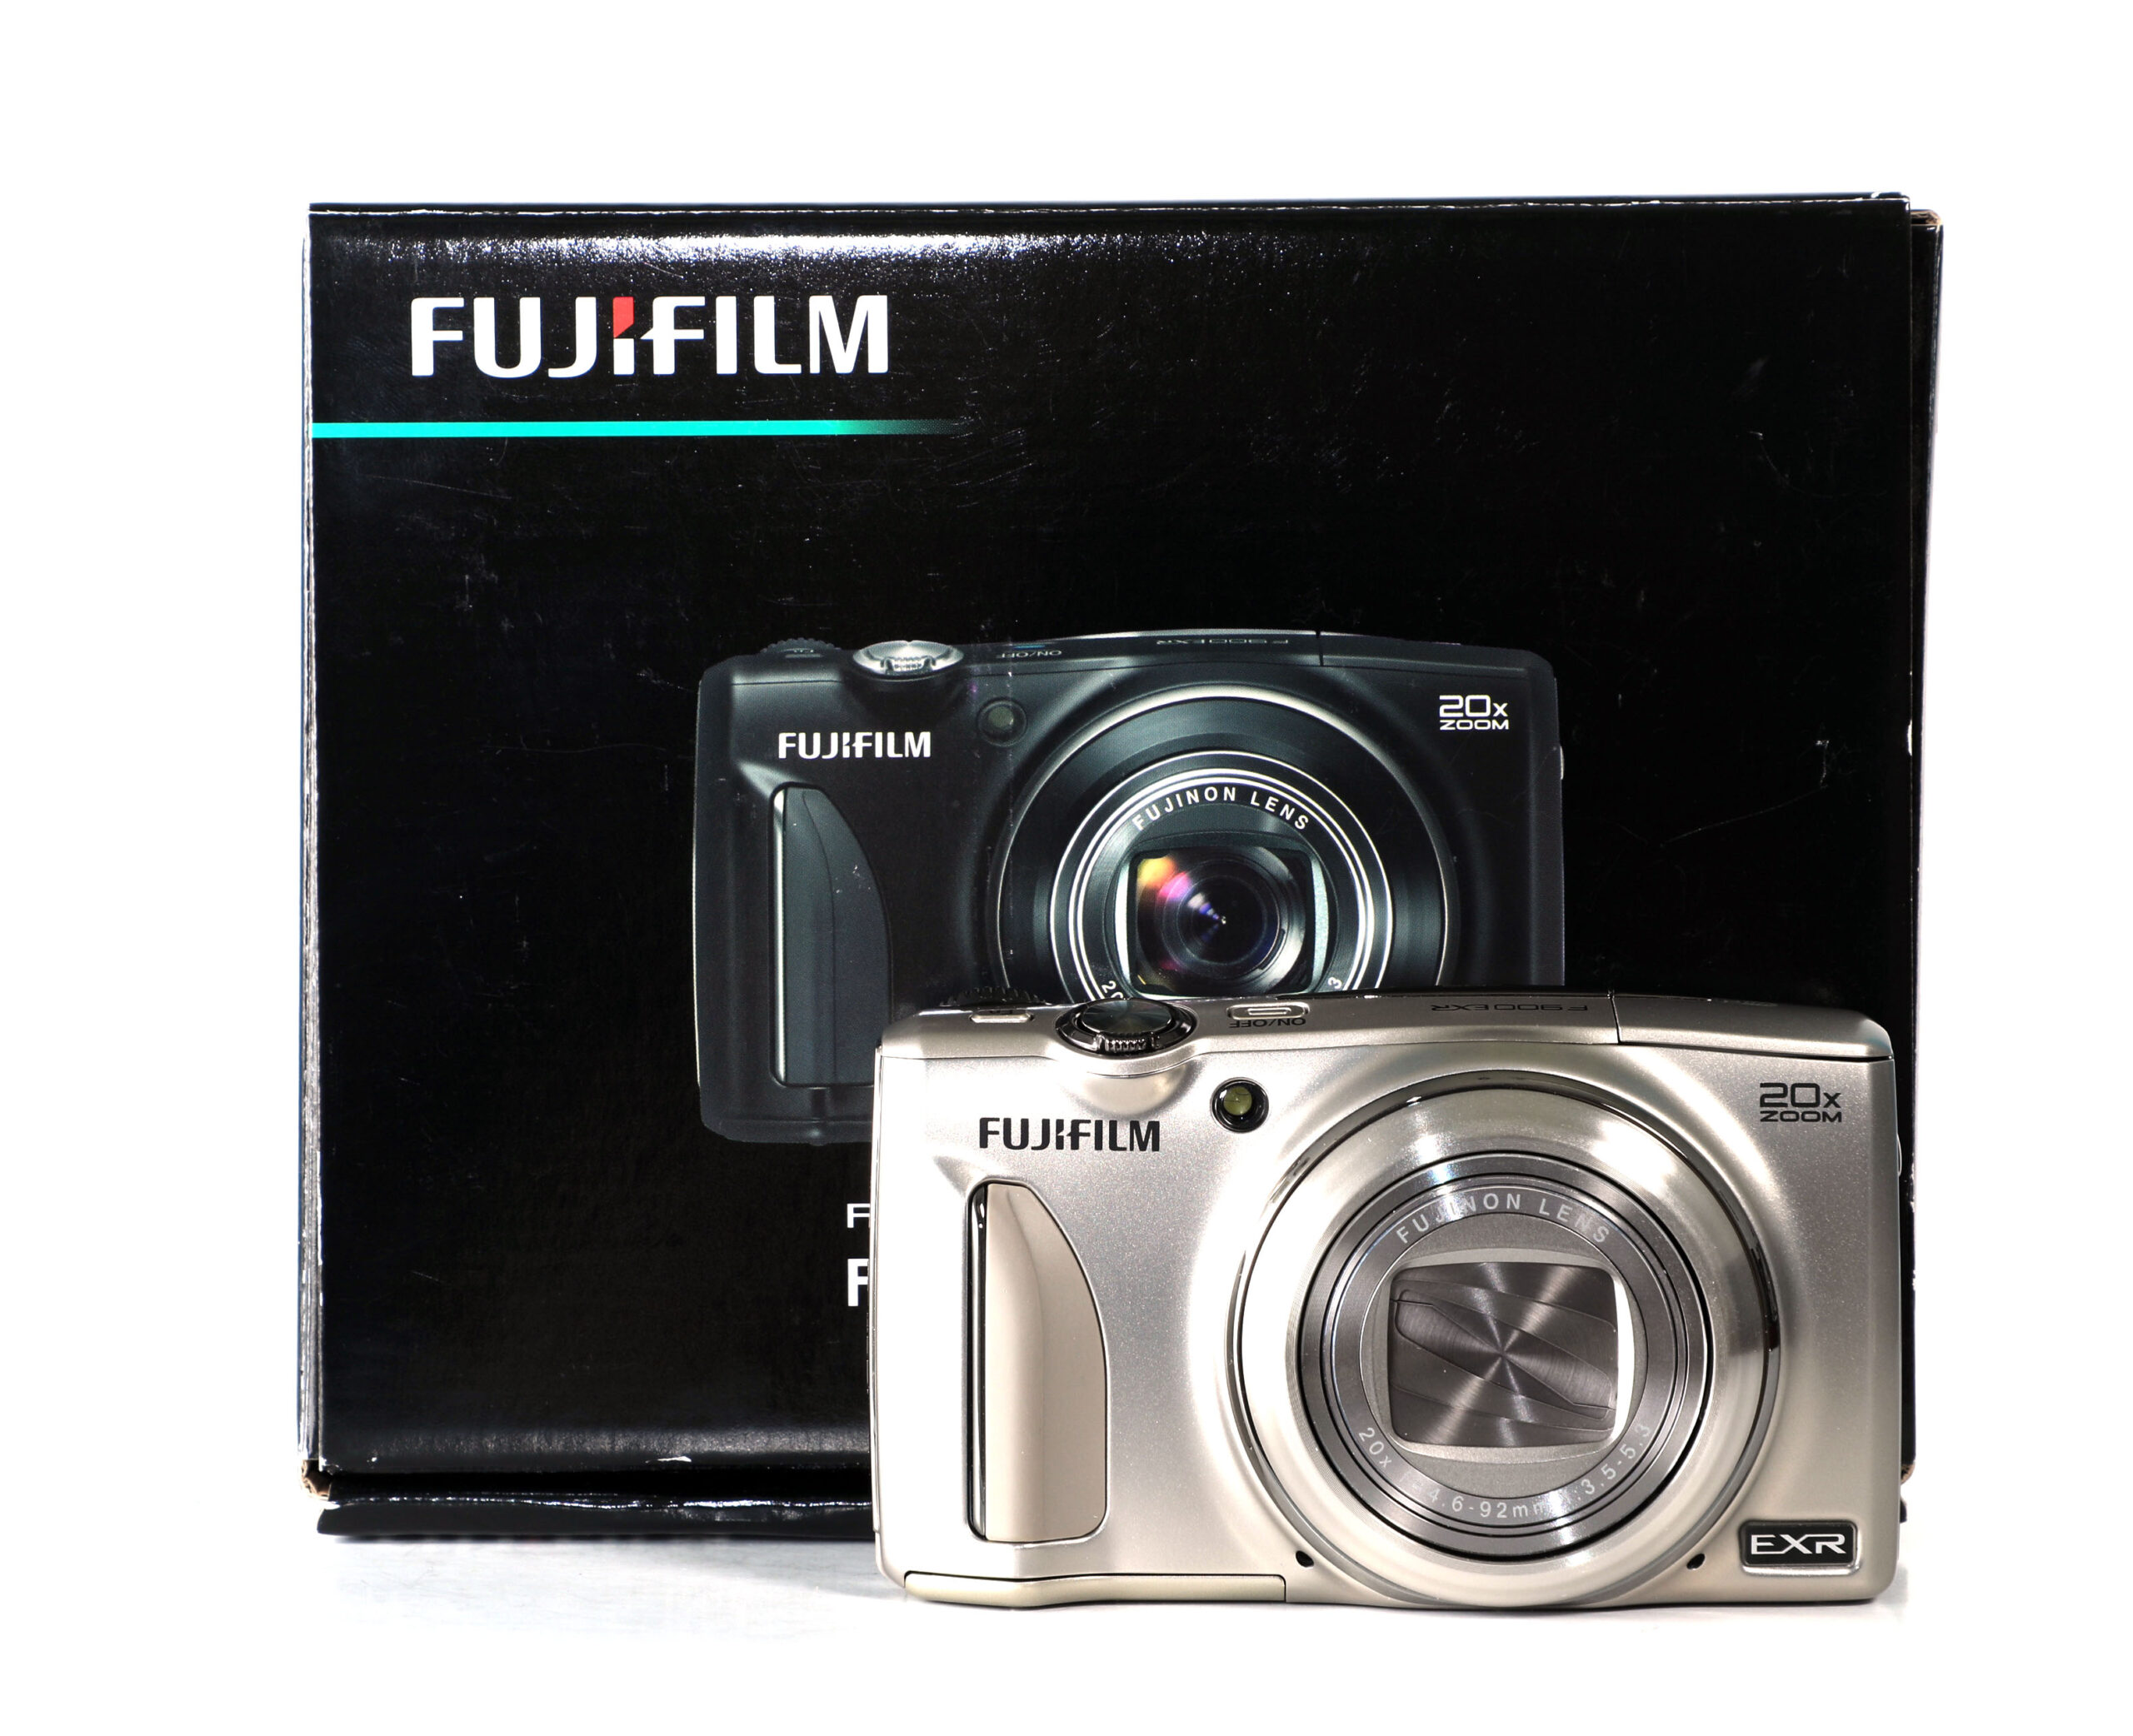 FUJIFILM FINEPIX F900 EXR